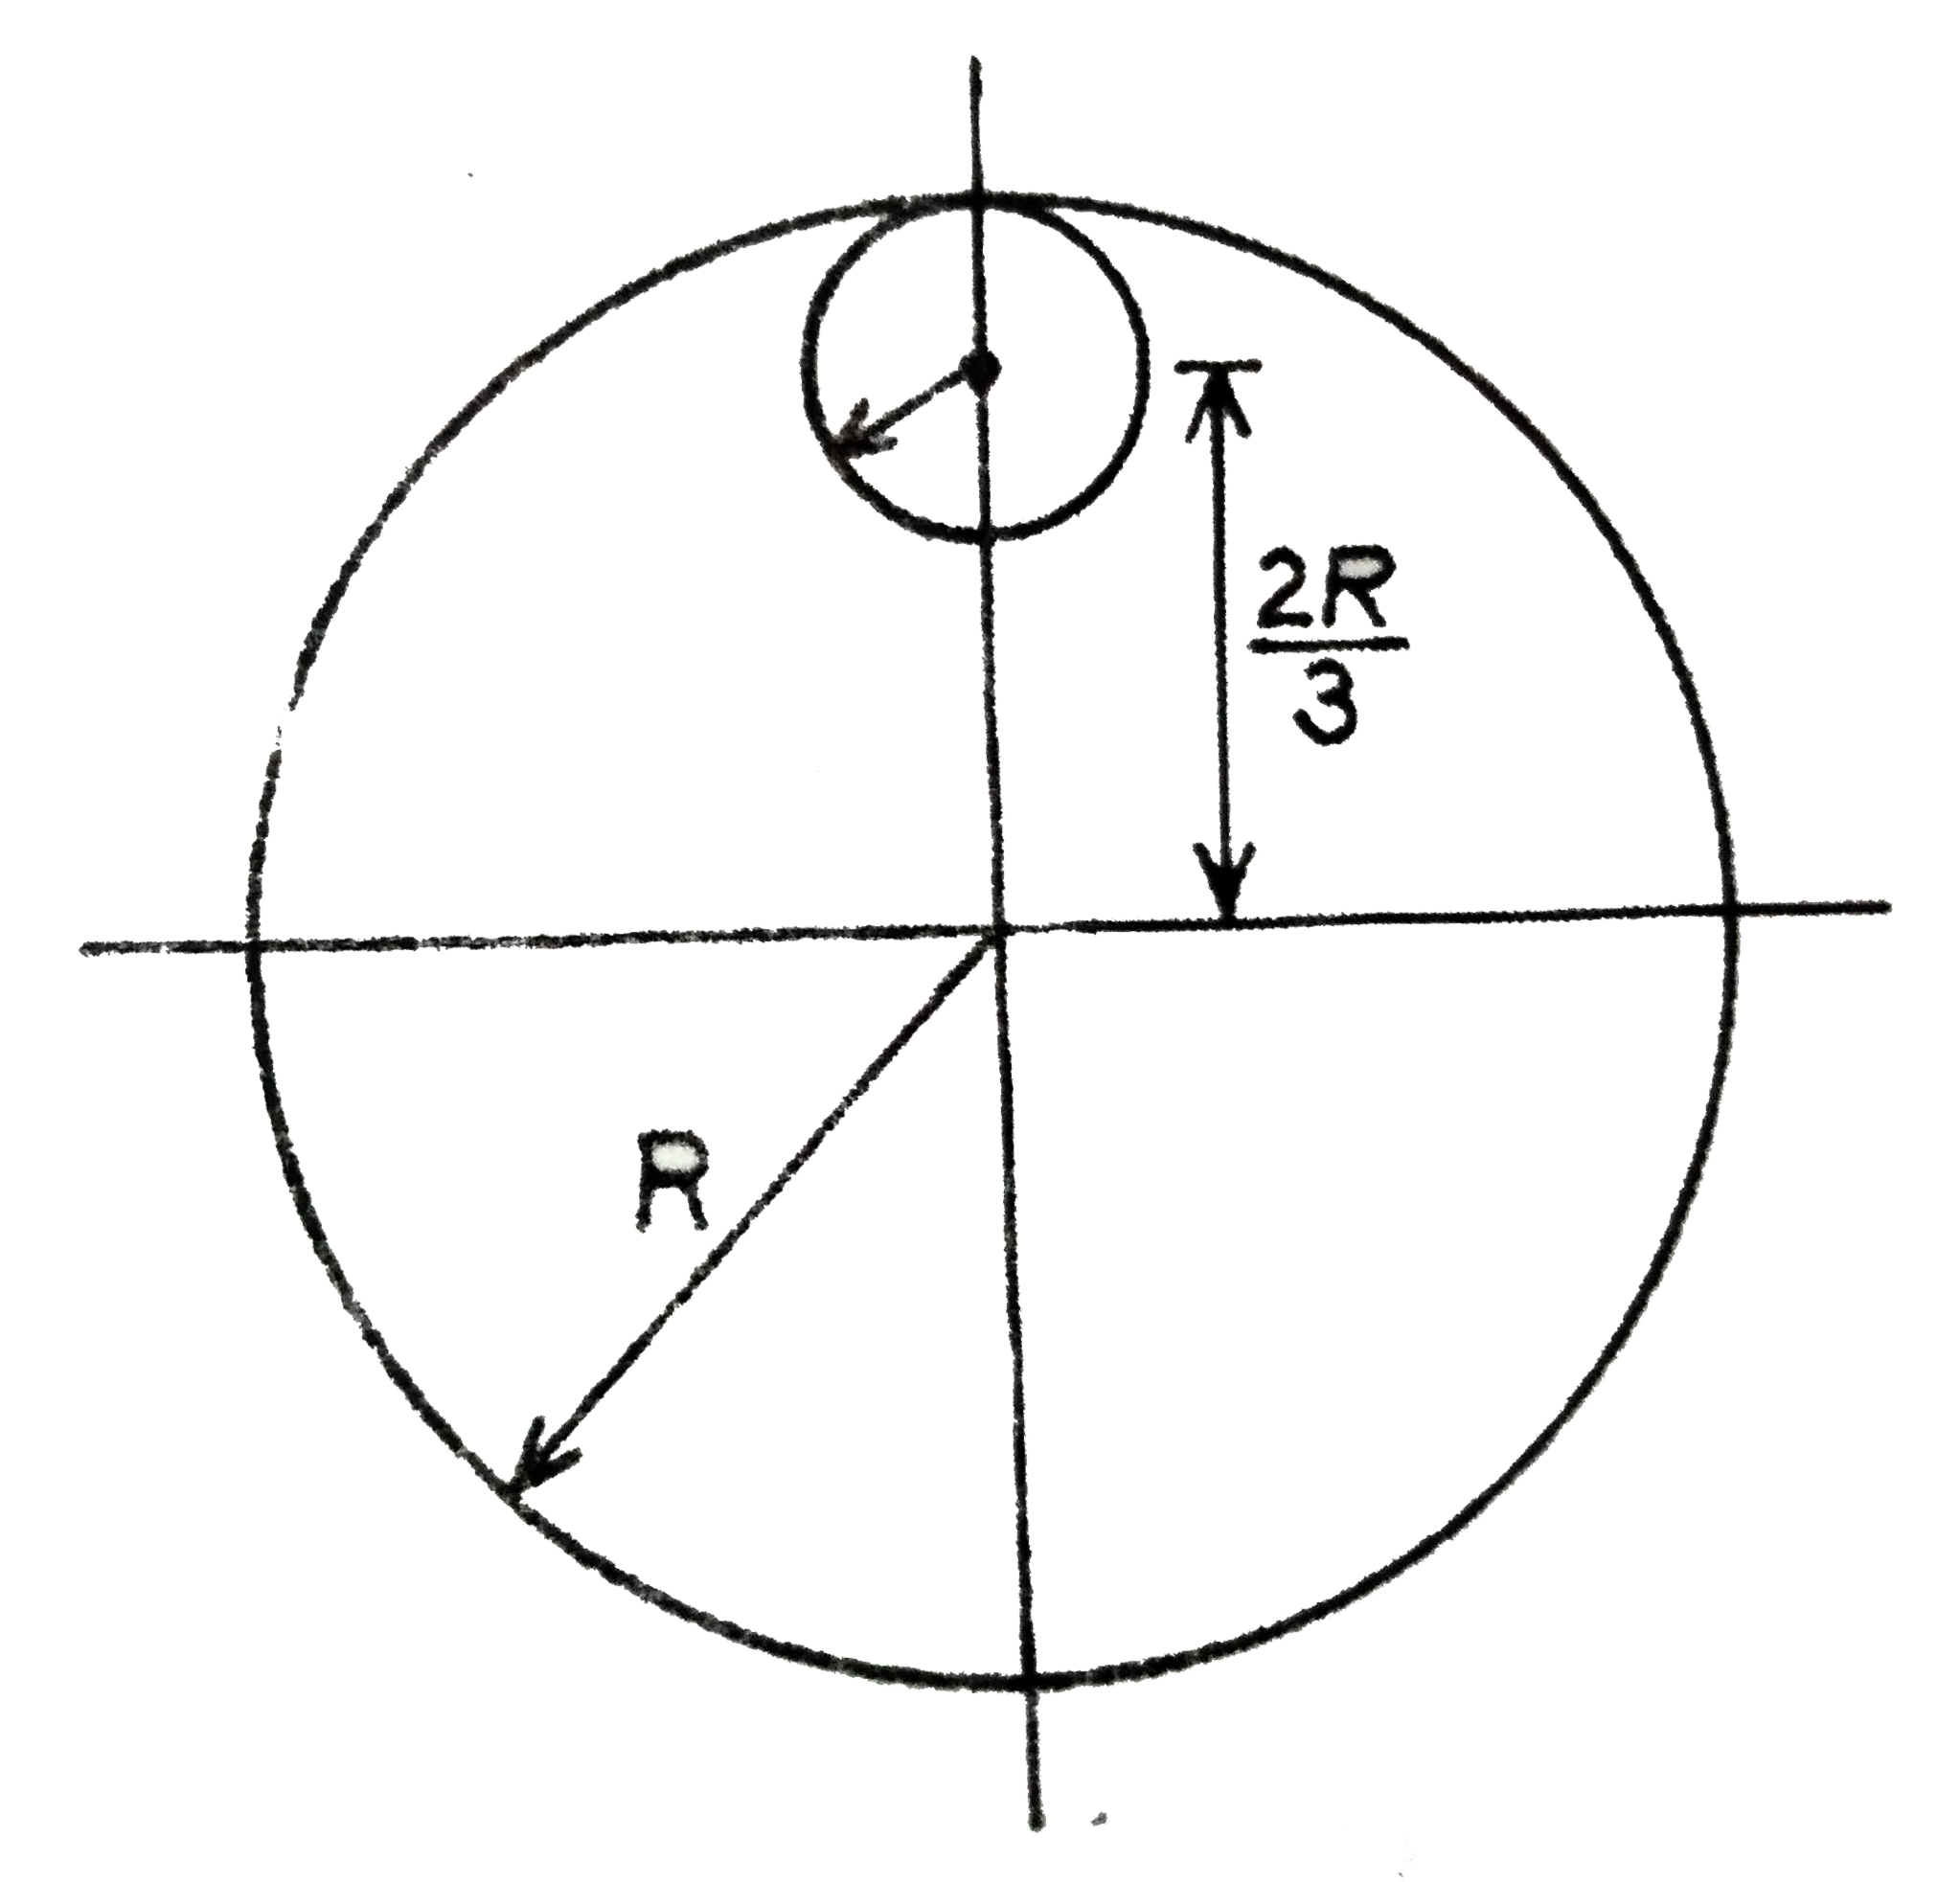 R त्रिज्या तथा 9M द्रव्यमान के एकचसमान गोलाकार डिस्क से R//3 त्रिज्या का एक छोटा गोलाकार डिस्क काट कर‌ निकाल लिया जाता है जैसा कि चित्र में दर्शाया गया है। डिस्क के सतह के लम्बवत एवं उसके केंद्र से गुजरने वाले अक्ष के सापेक्ष बची हुई डिस्क का जड़त्व आघूर्ण होगा: